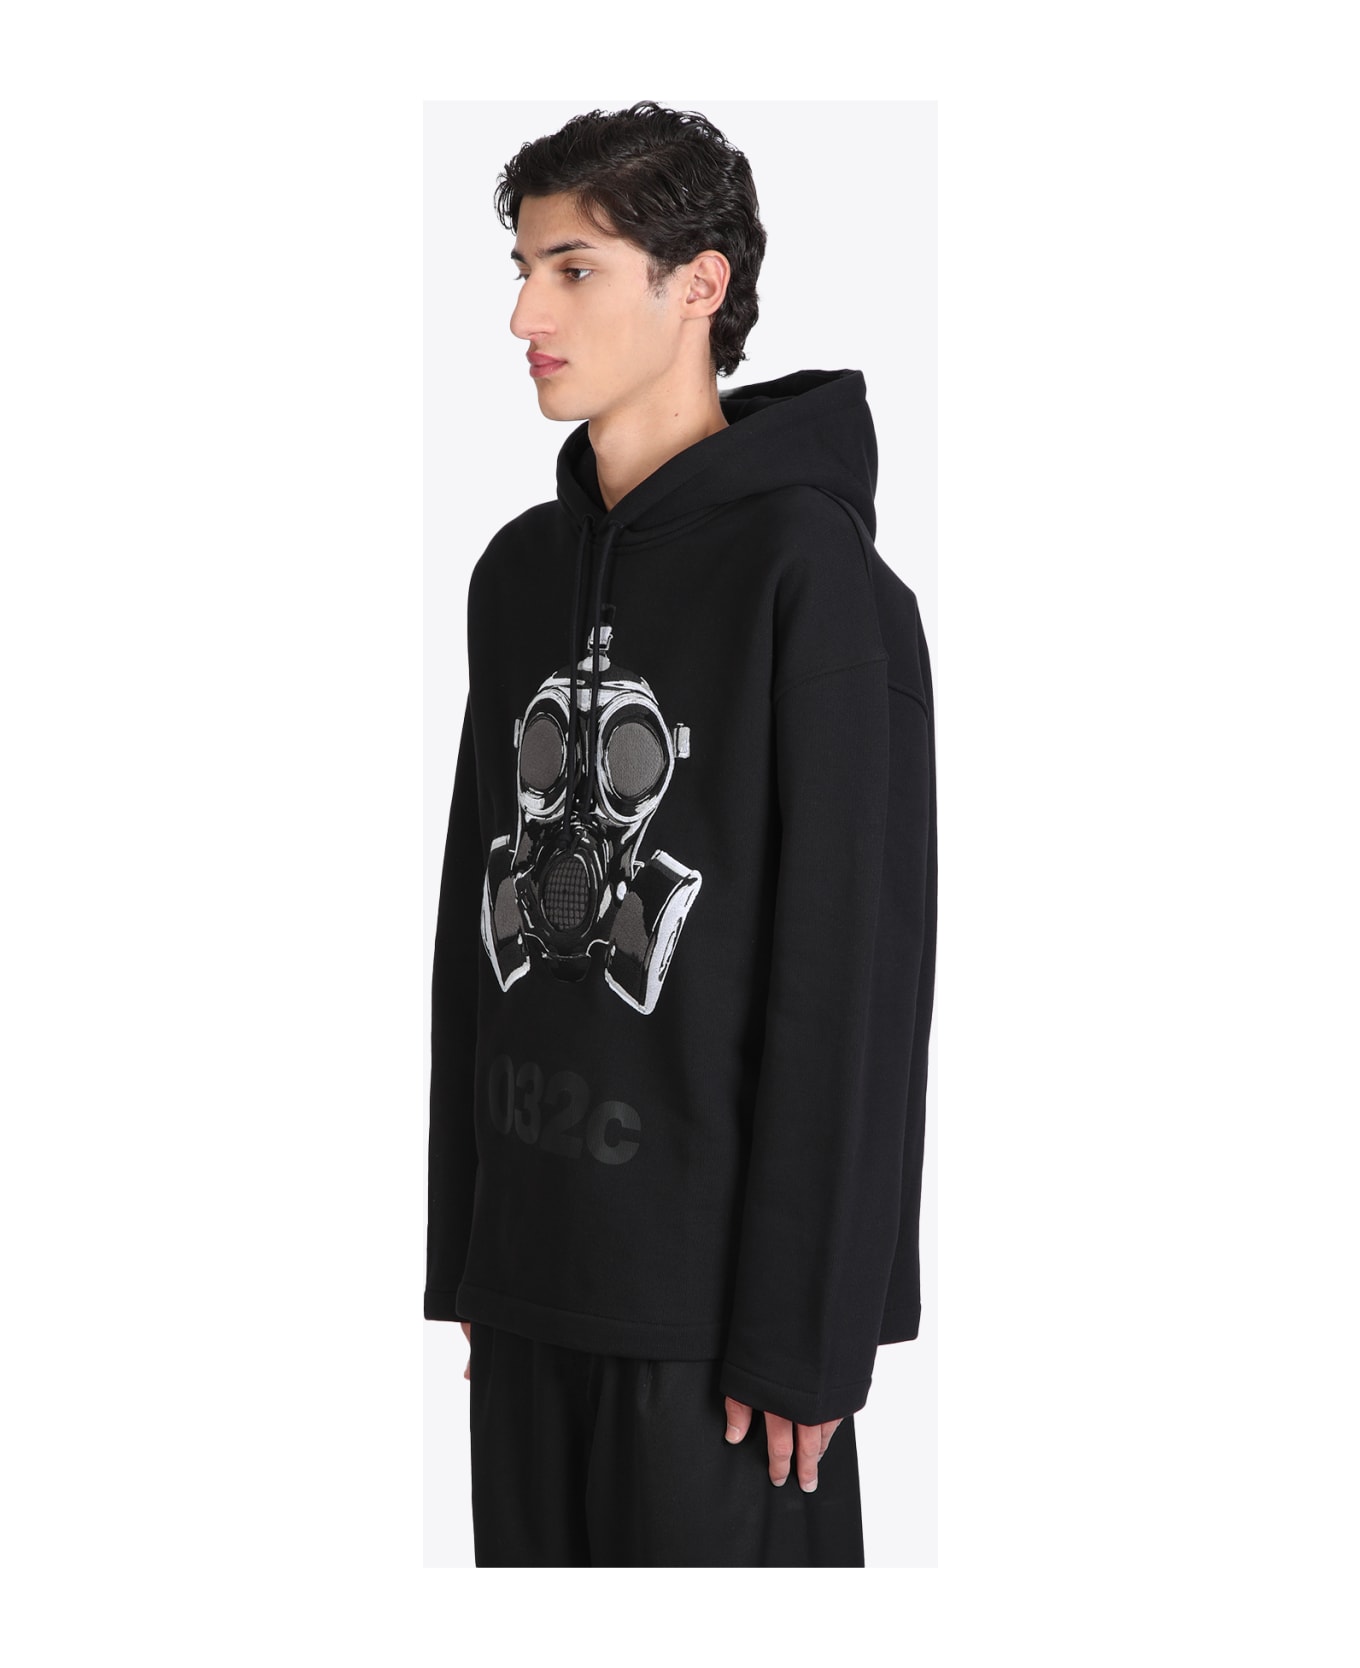 032c Oversized Mask Hoodie Black cotton hoodie with gas mask print - Oversized mask hoodie - Nero